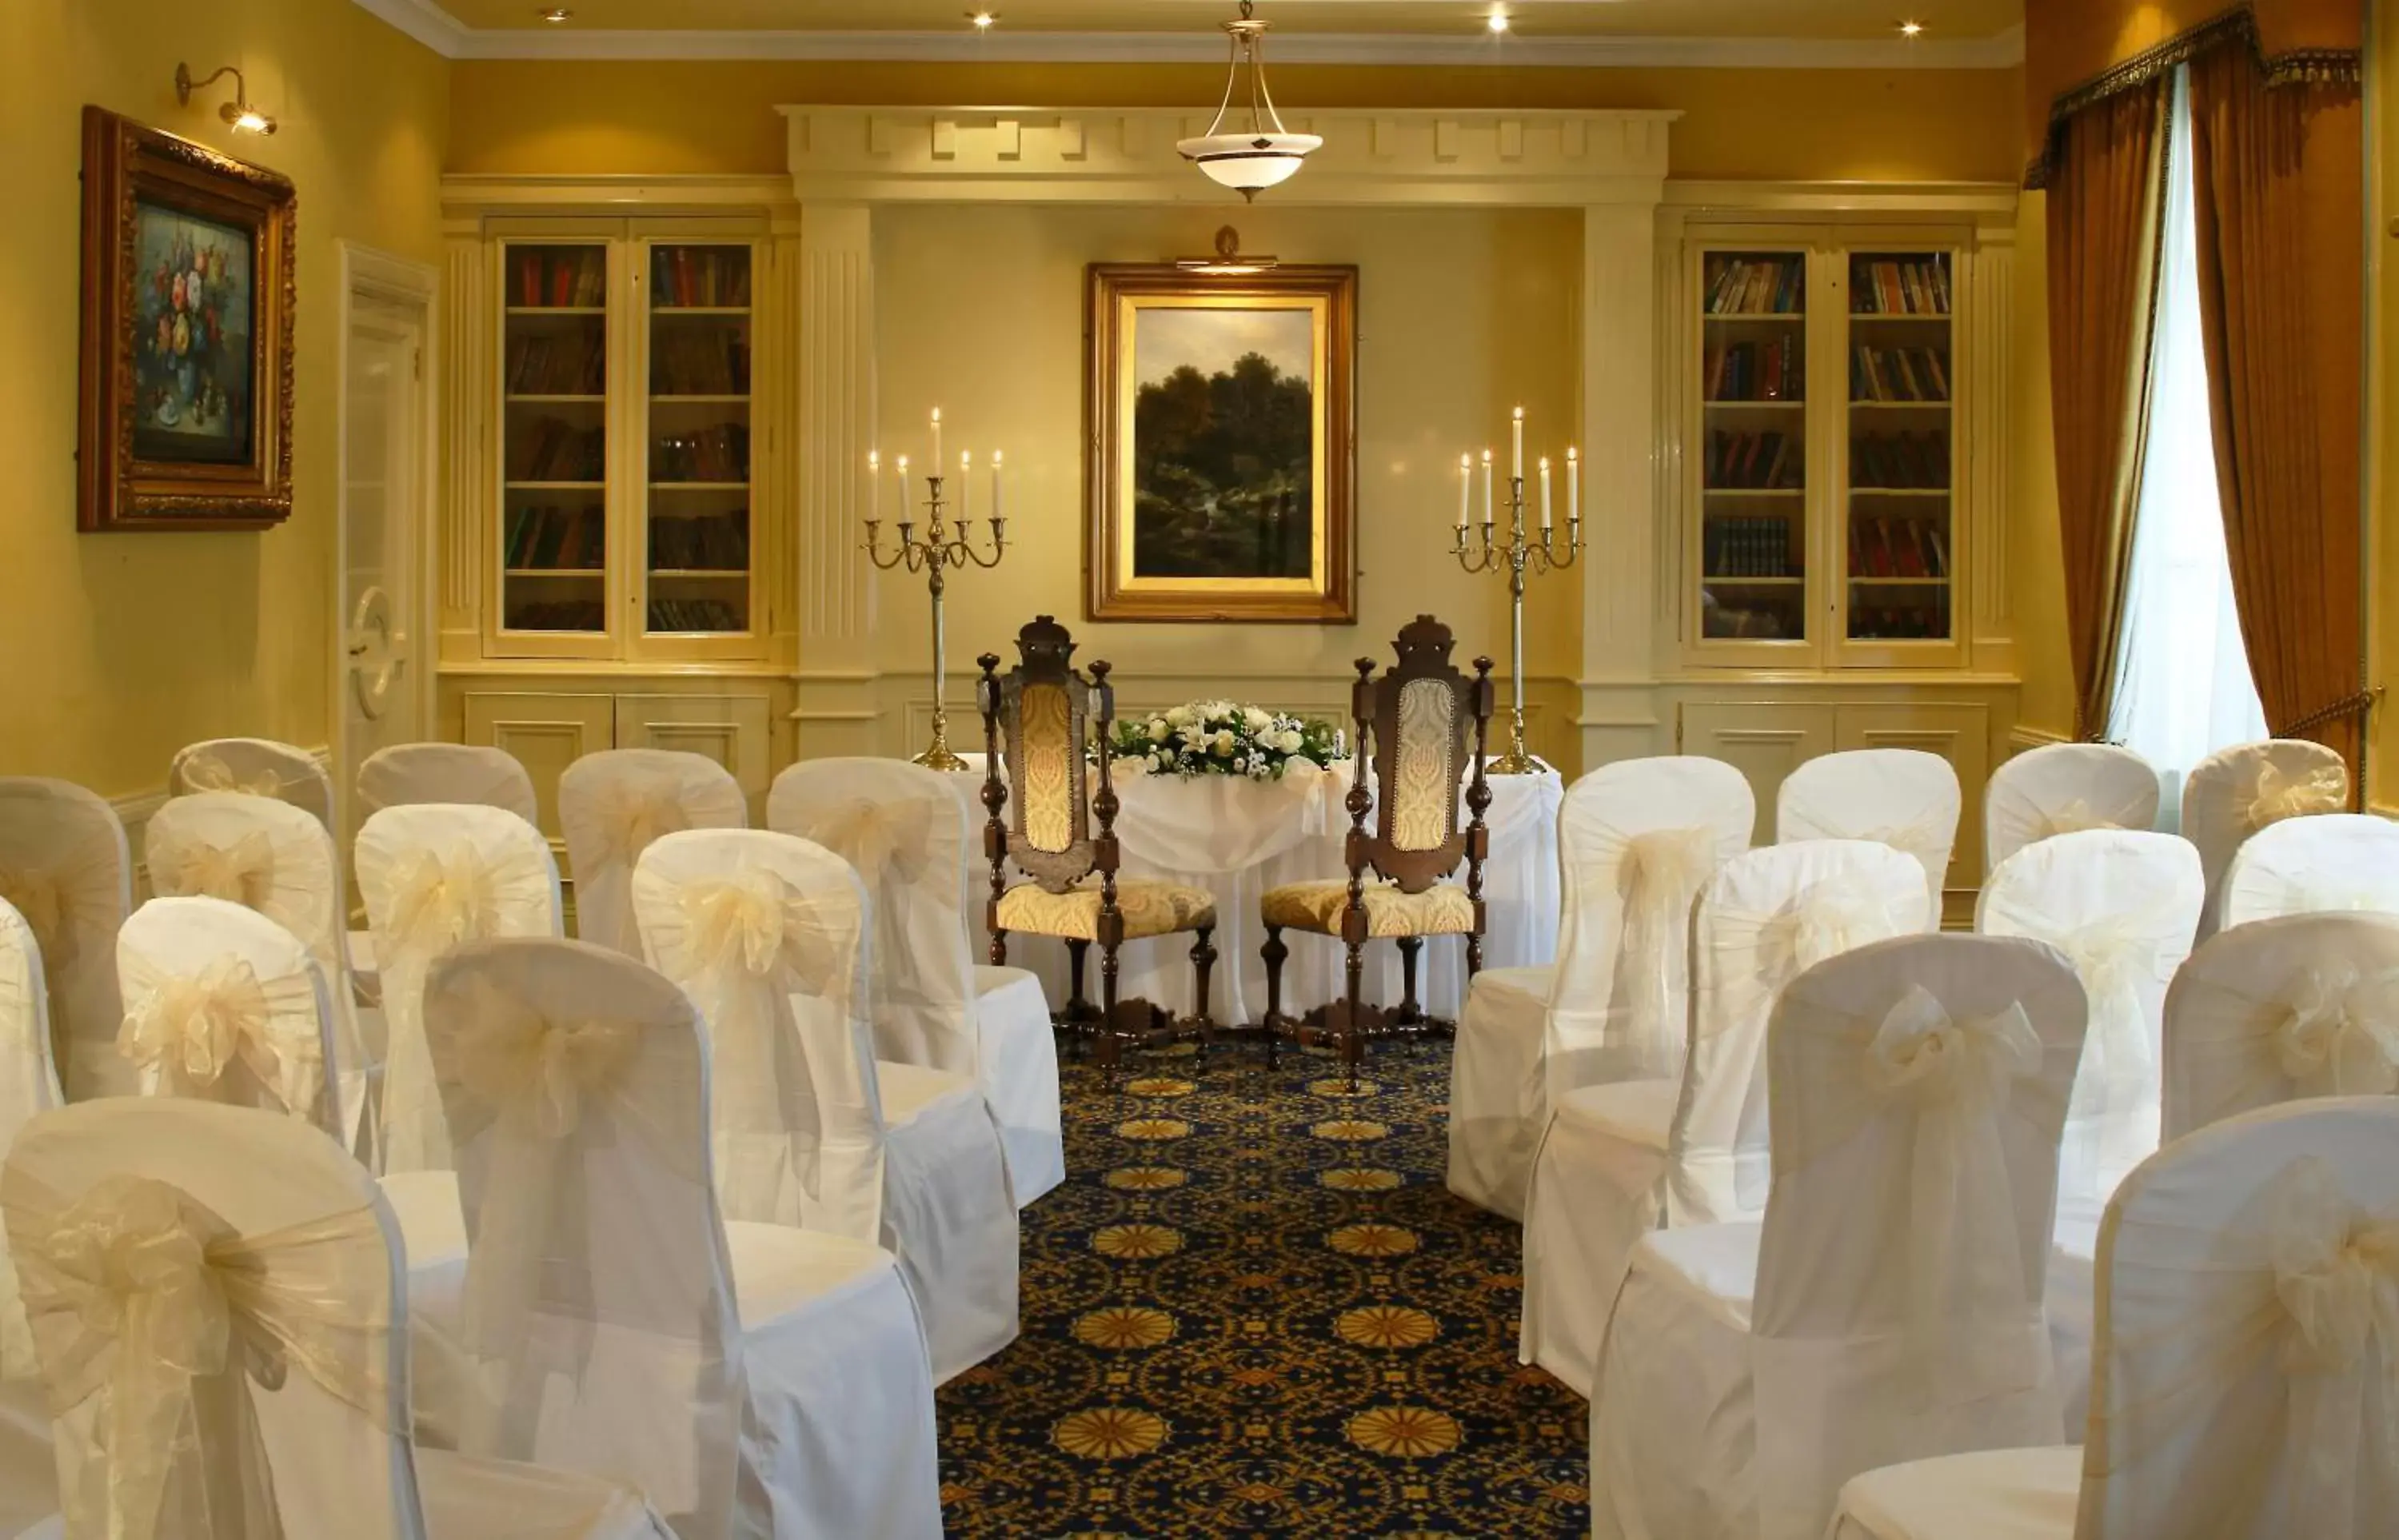 Banquet/Function facilities, Banquet Facilities in Granville Hotel